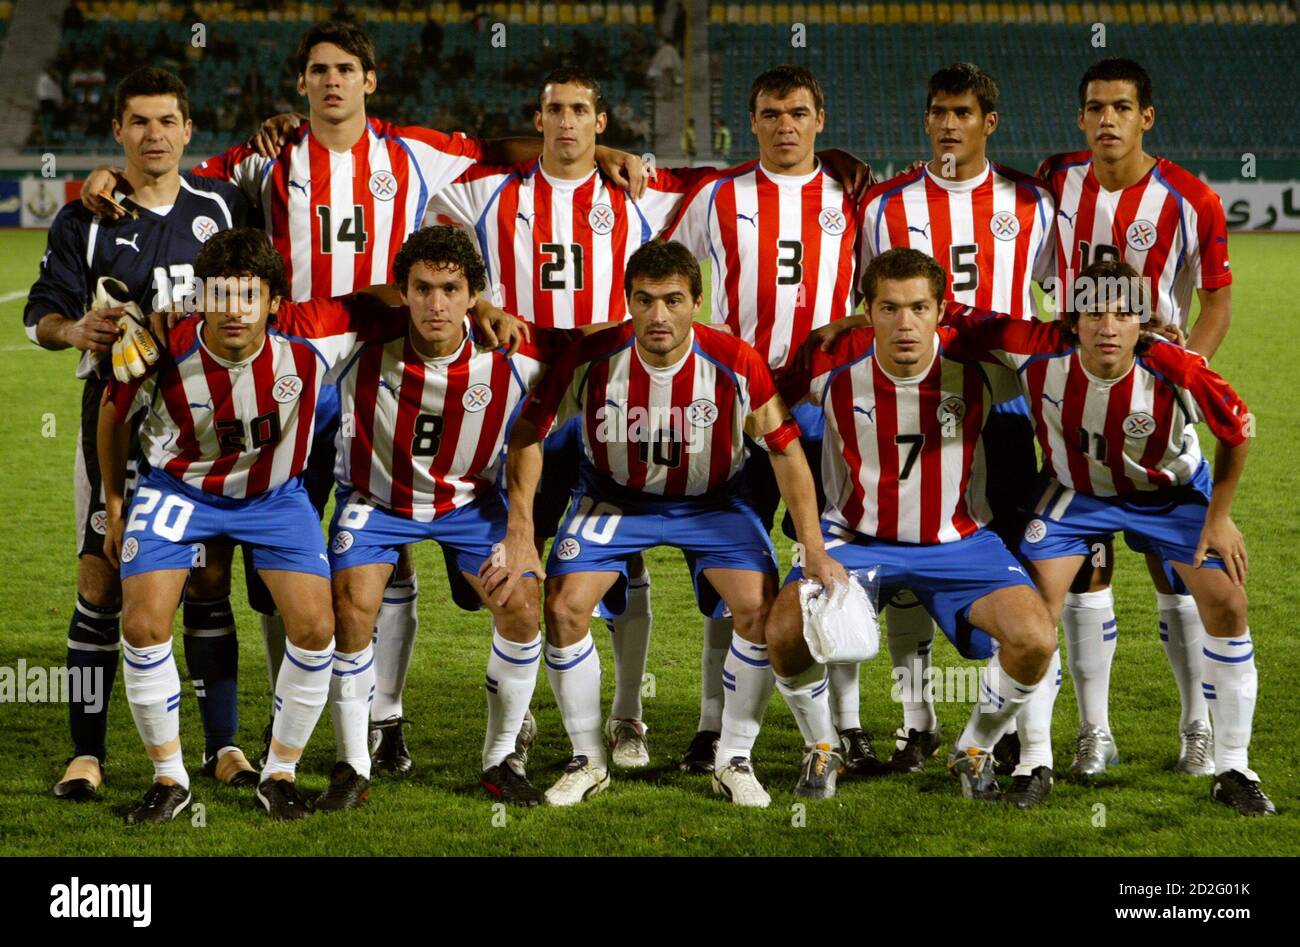 Paraguay Fussball Nationalmannschaft vor einem internationalen  Freundschaftsspiel in Teheran 13. November 2005. Vordere Reihe, L, R sind:  Santiago Selcedo, Cristian Riveros, Roberto Acuna, Dante Lopez, José  Montiel. Hintere Reihe, L, R sind: